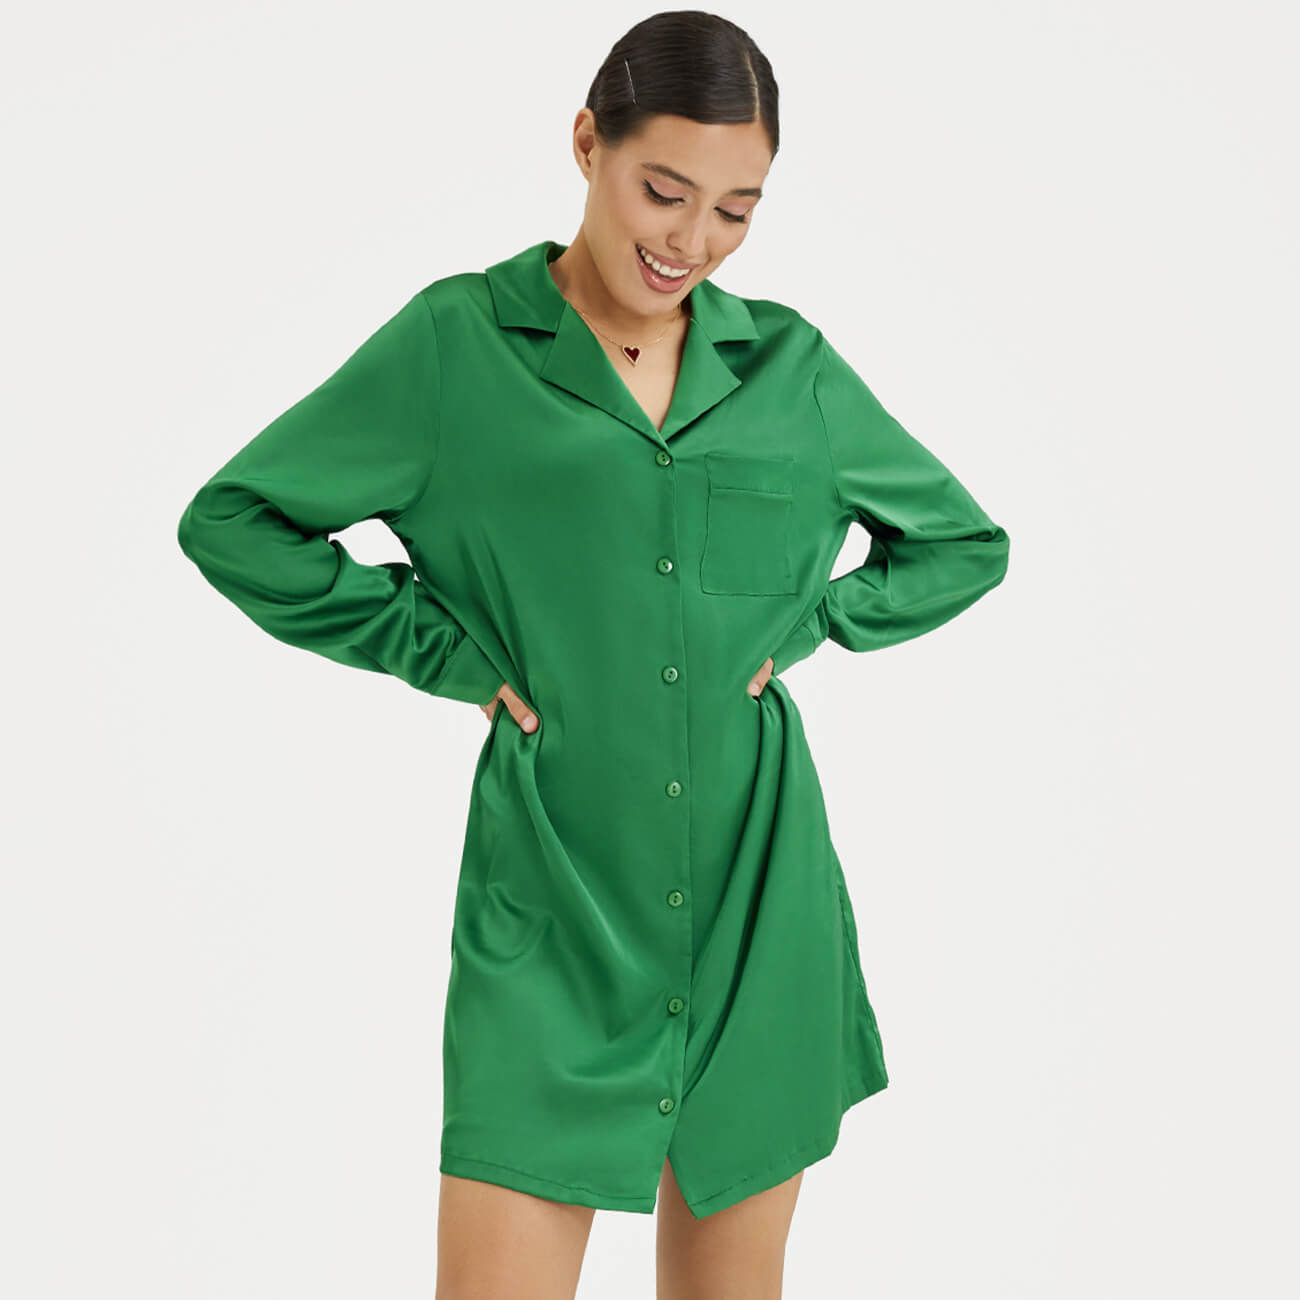 Рубашка женская, р. XL, удлиненная, с длинным рукавом, полиэстер/эластан, зеленая, Madeline рубашка женская р s удлиненная с длинным рукавом полиэстер эластан черная madeline